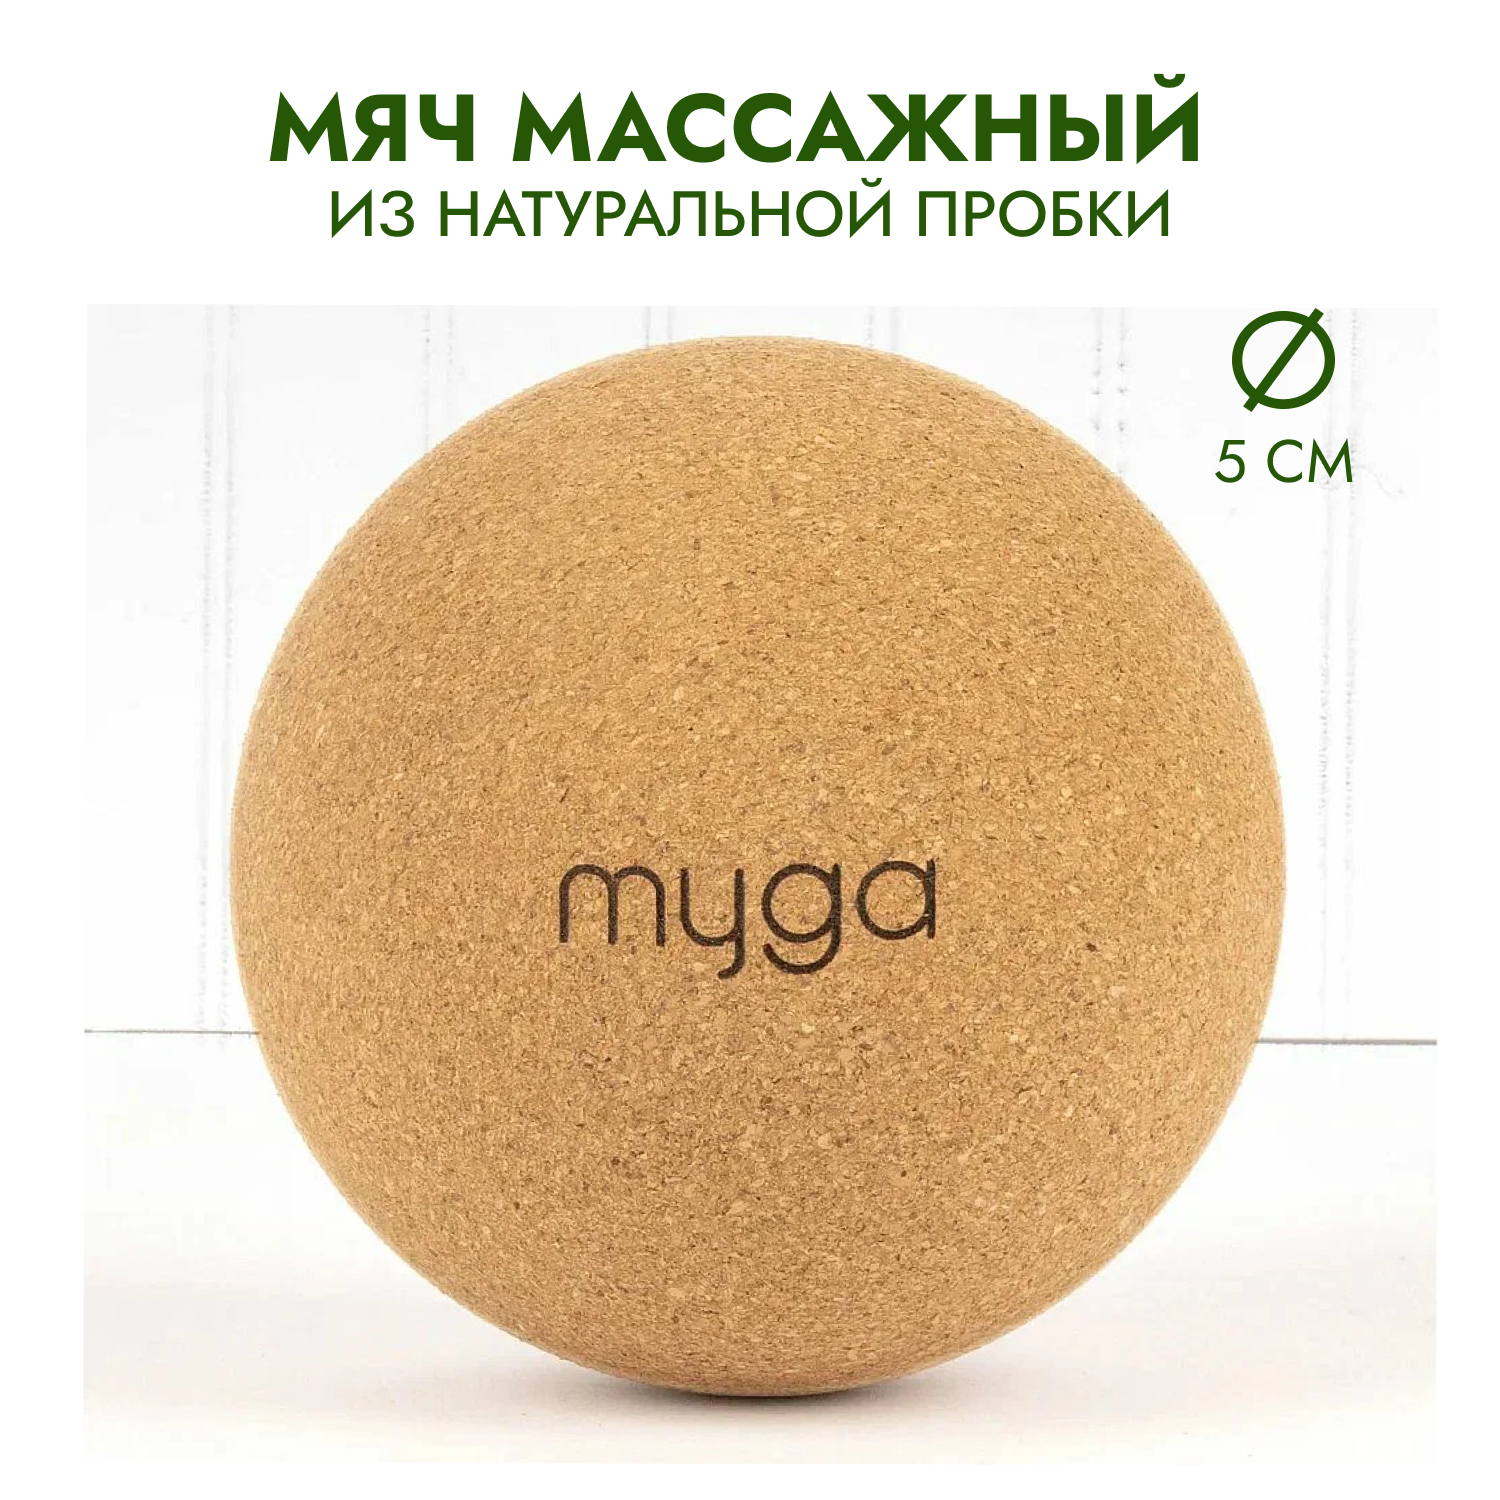 Массажный мяч для МФР из натуральной пробки MYGA Massage Cork Ball, 5 см